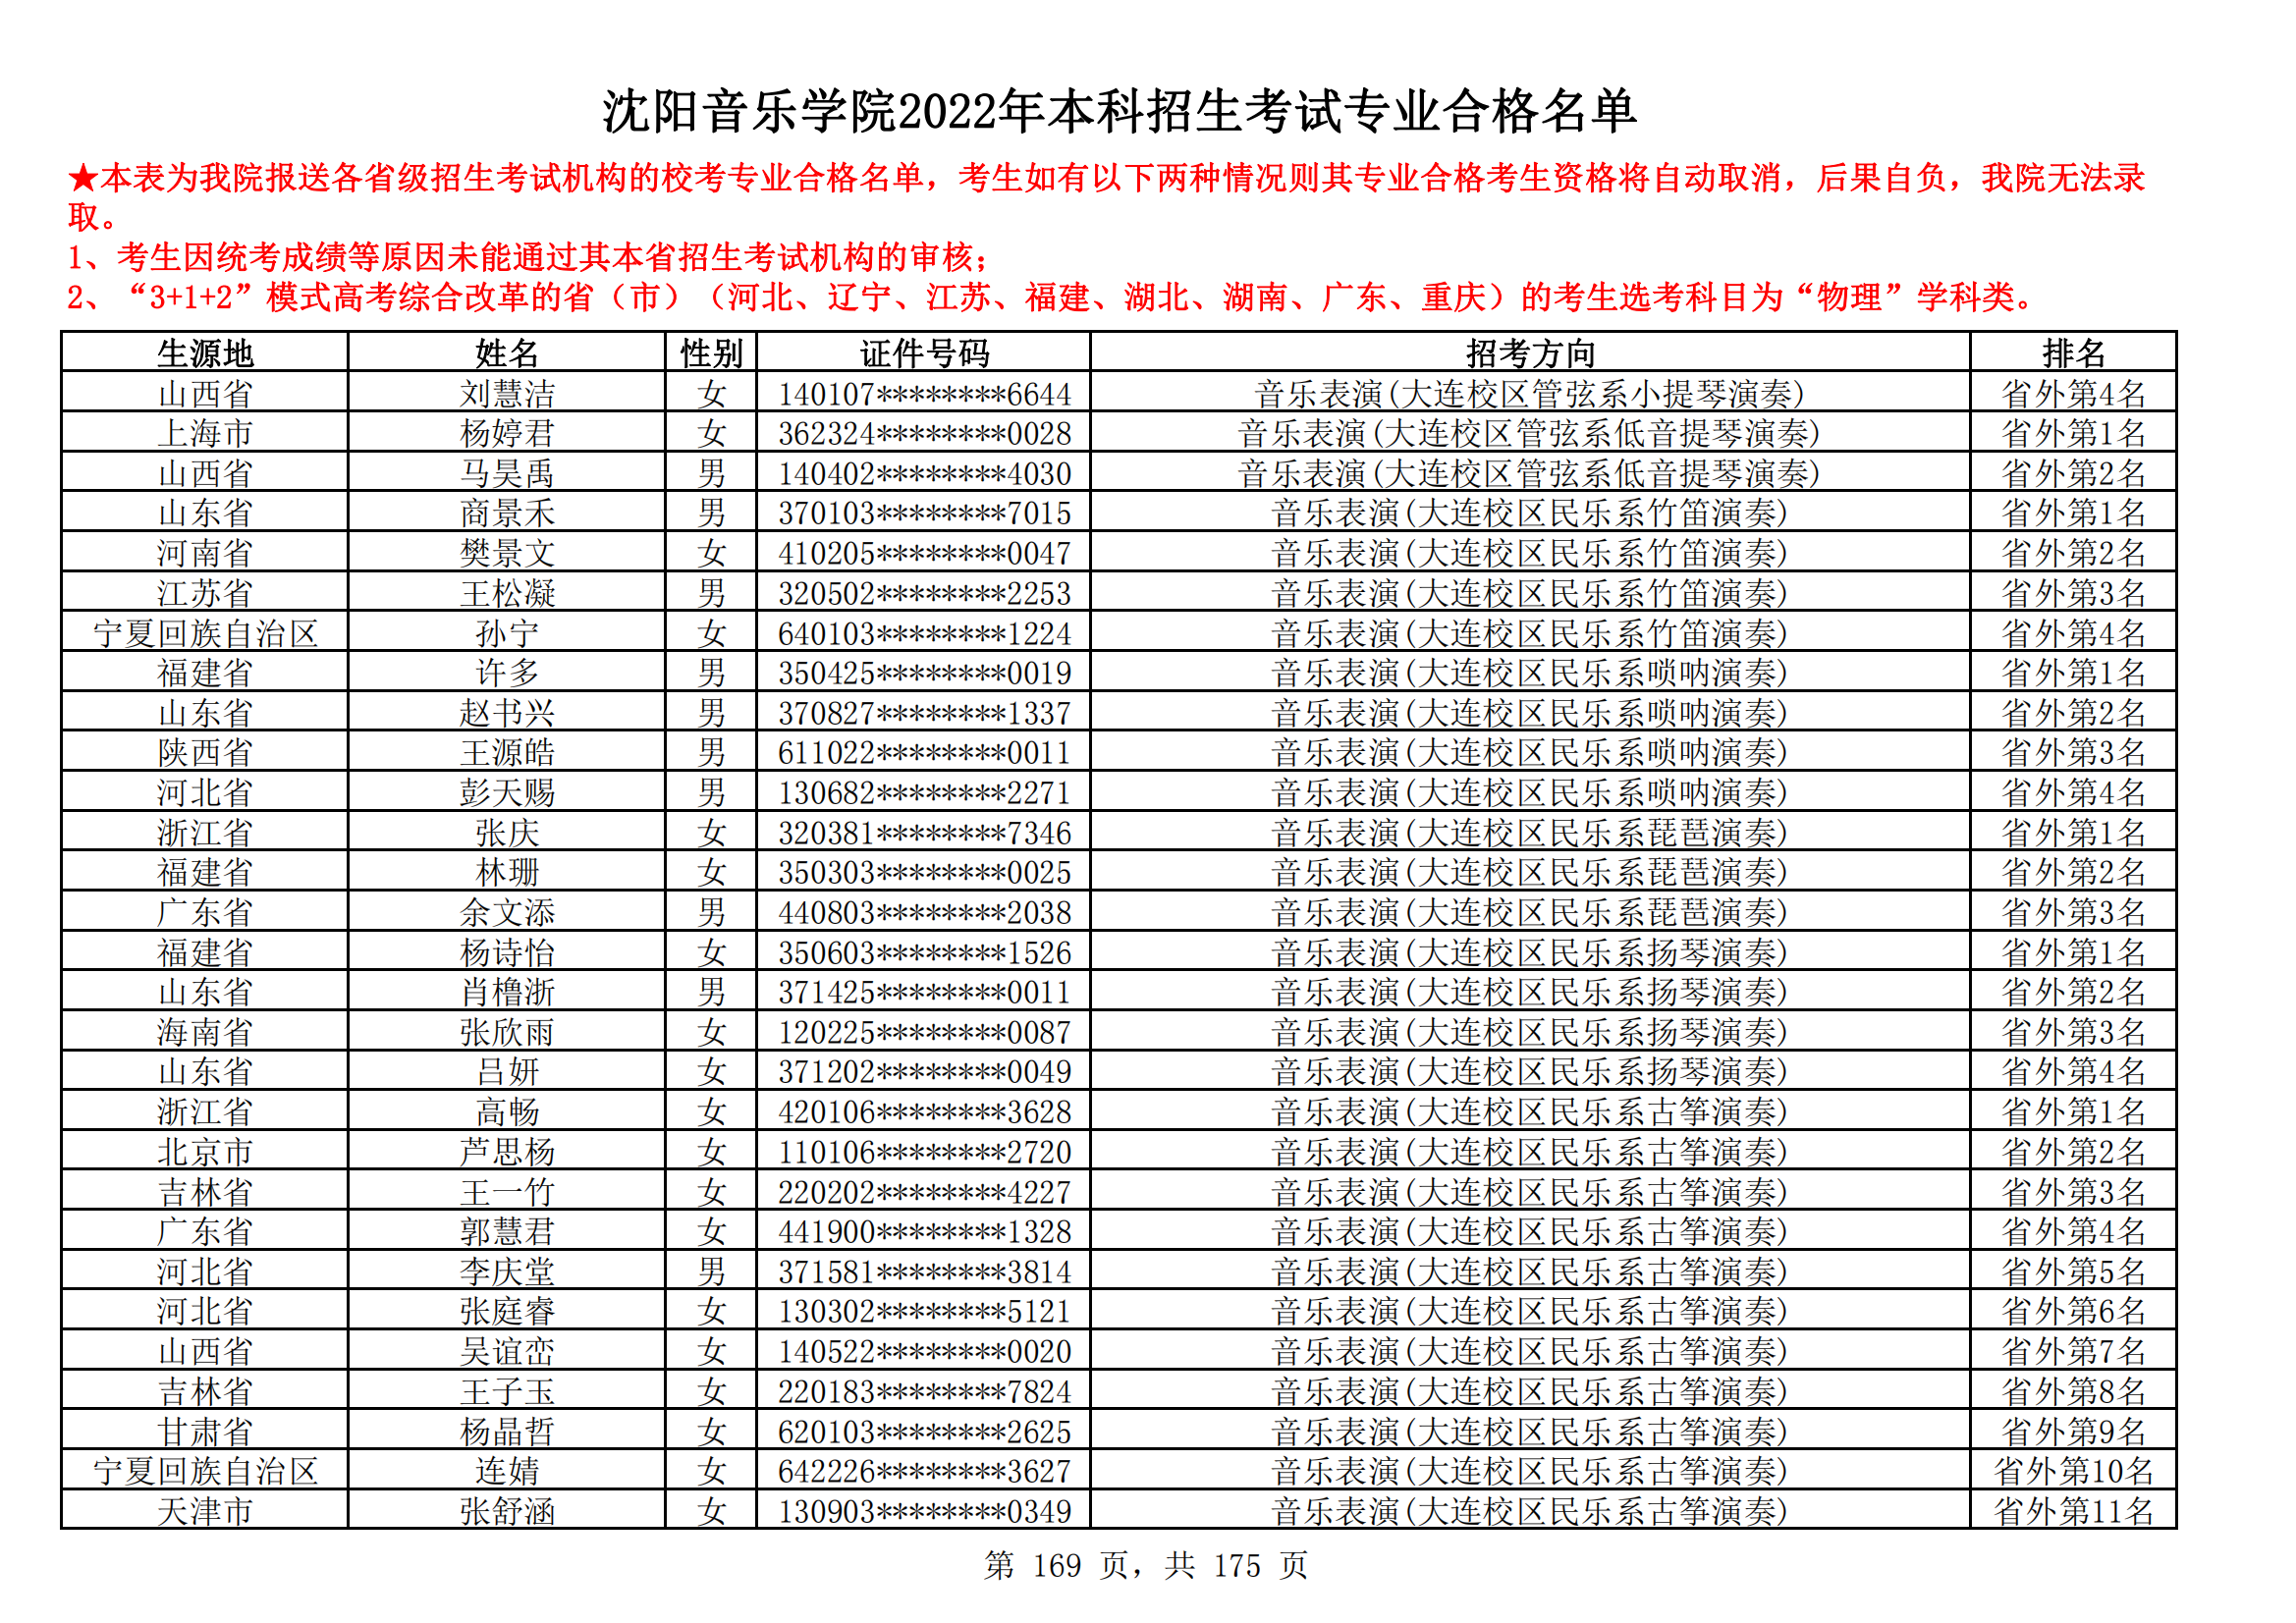 沈阳音乐学院2022年本科招生考试专业合格名单_168.png